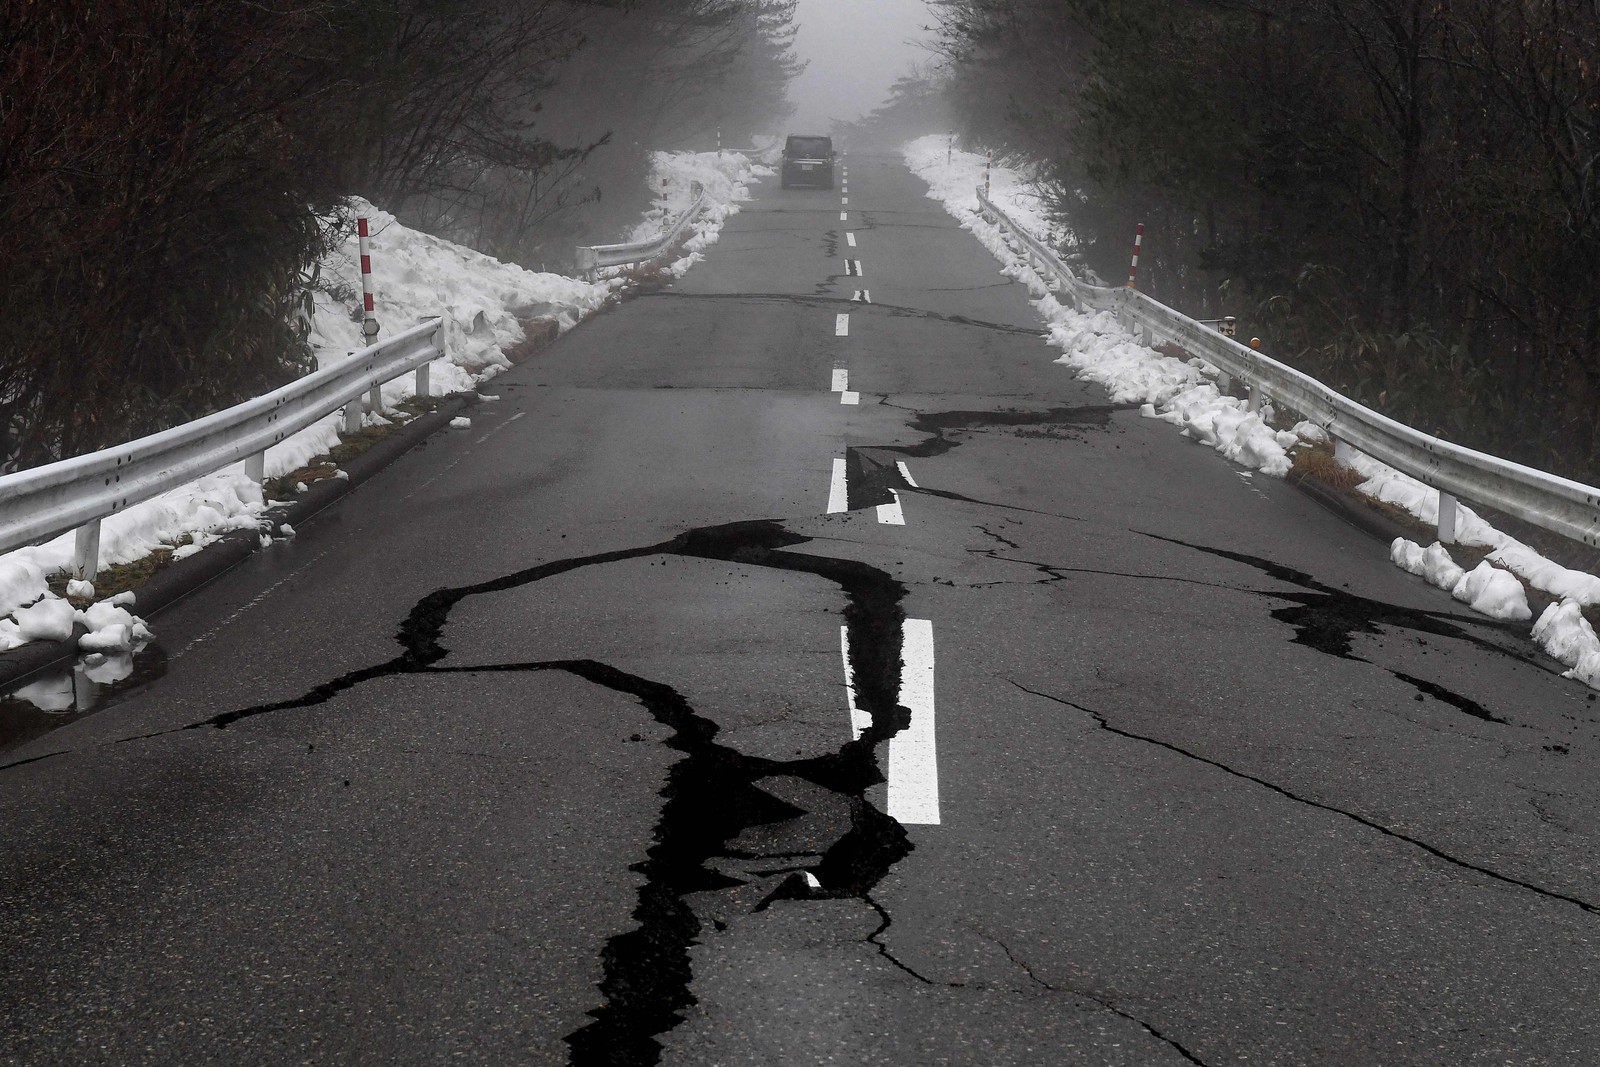 Rodovia ficou rachada após terremoto atingir o Japão — Foto: Toshifumi KITAMURA / AFP